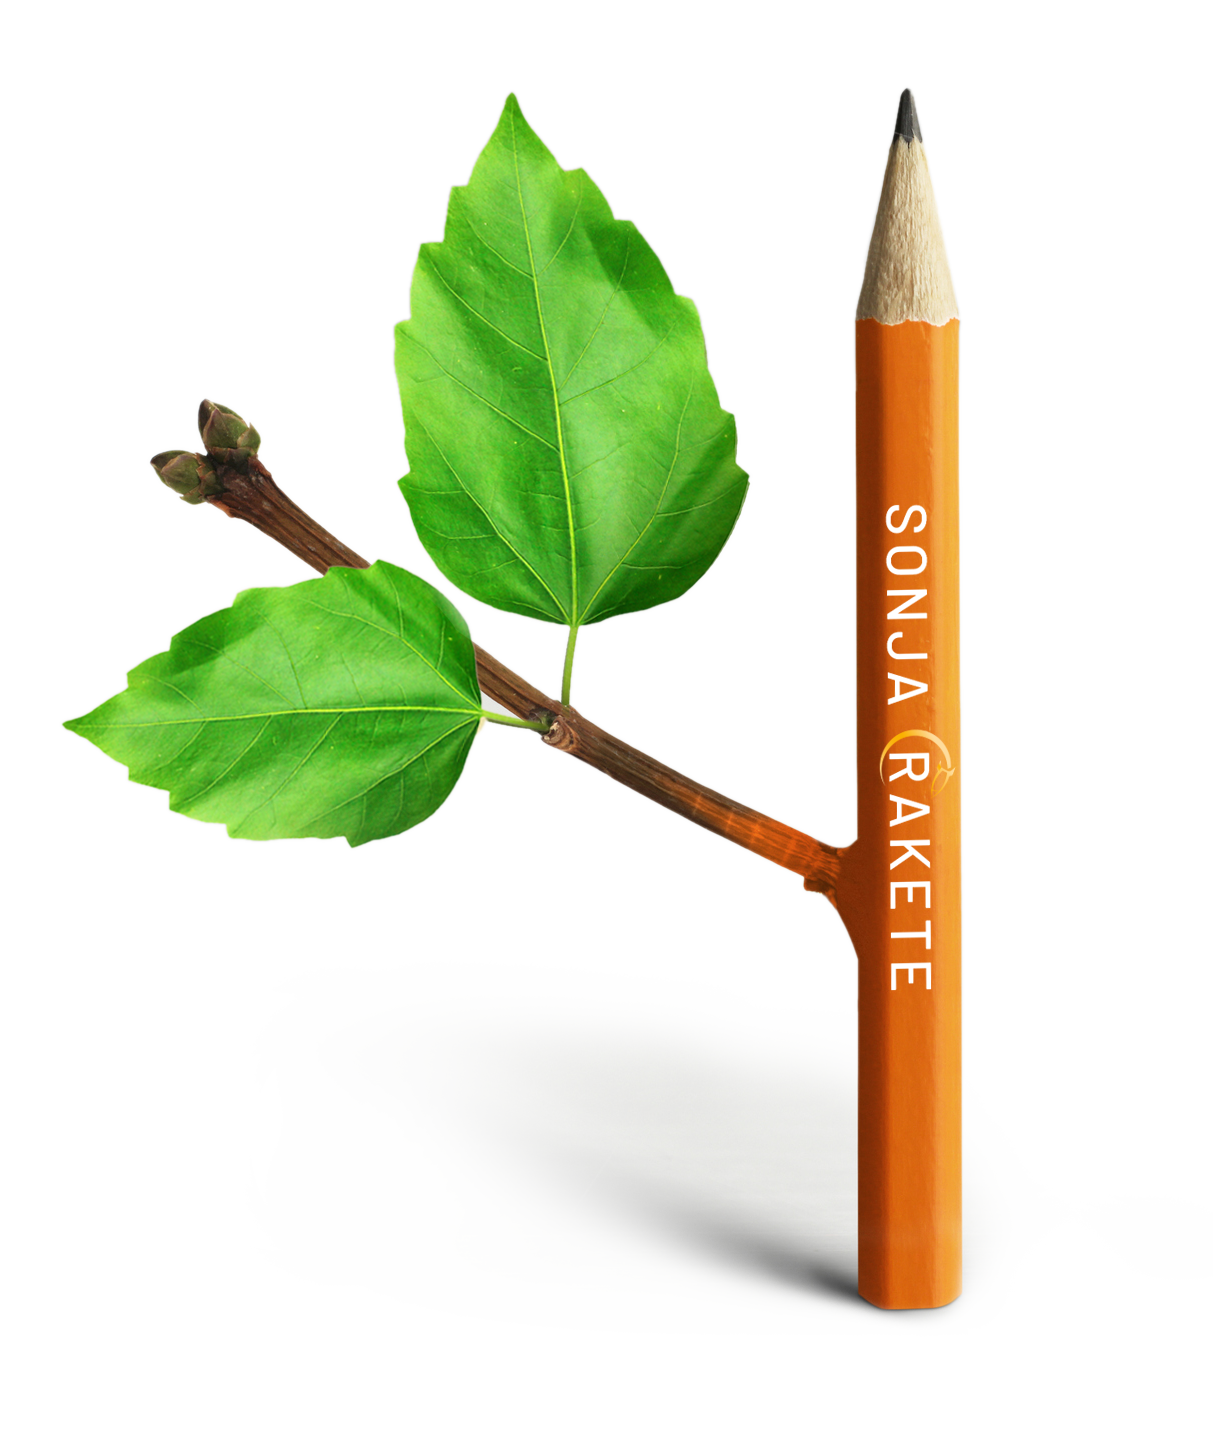 Bleistift mit Blättern symbolisiert Ideen